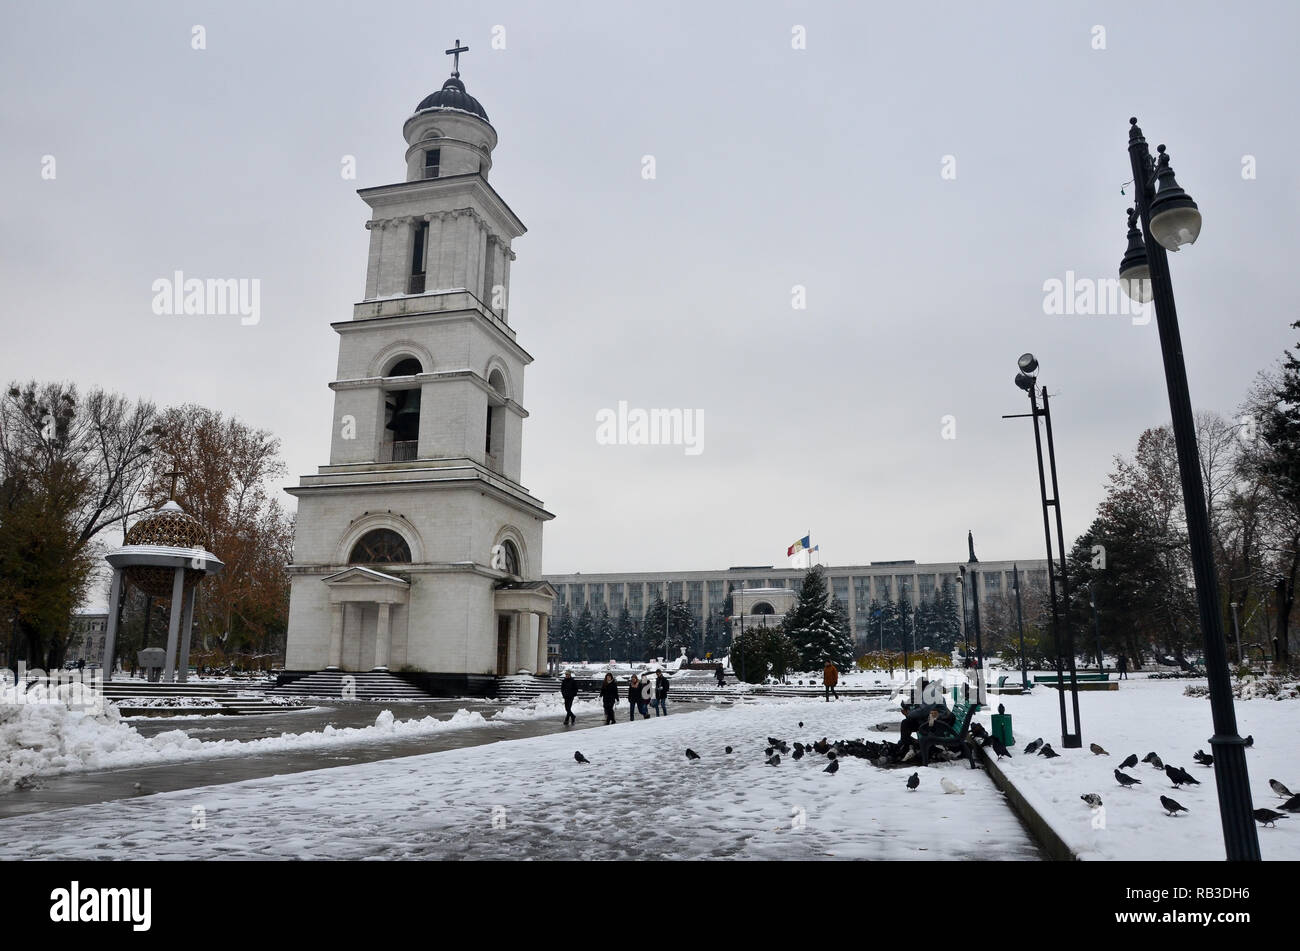 Glockenturm und Regierung Haus im Schnee, Kathedrale Park, Chisinau (Chisinau), der Republik Moldau, November 2018 Stockfoto